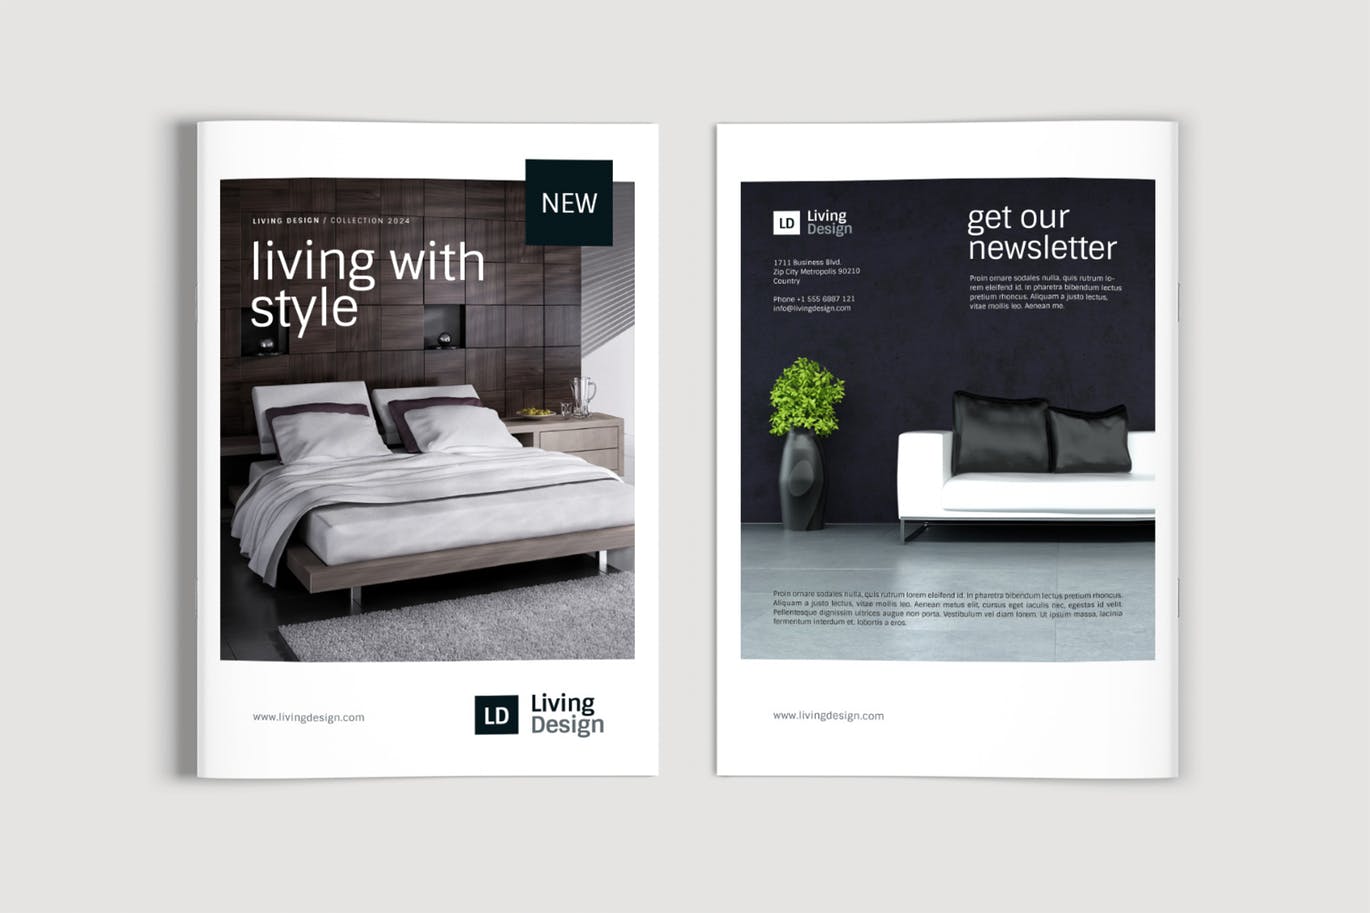 生活家居品牌产品目录/画册设计模板 Living Design – Product Catalog Template插图(8)